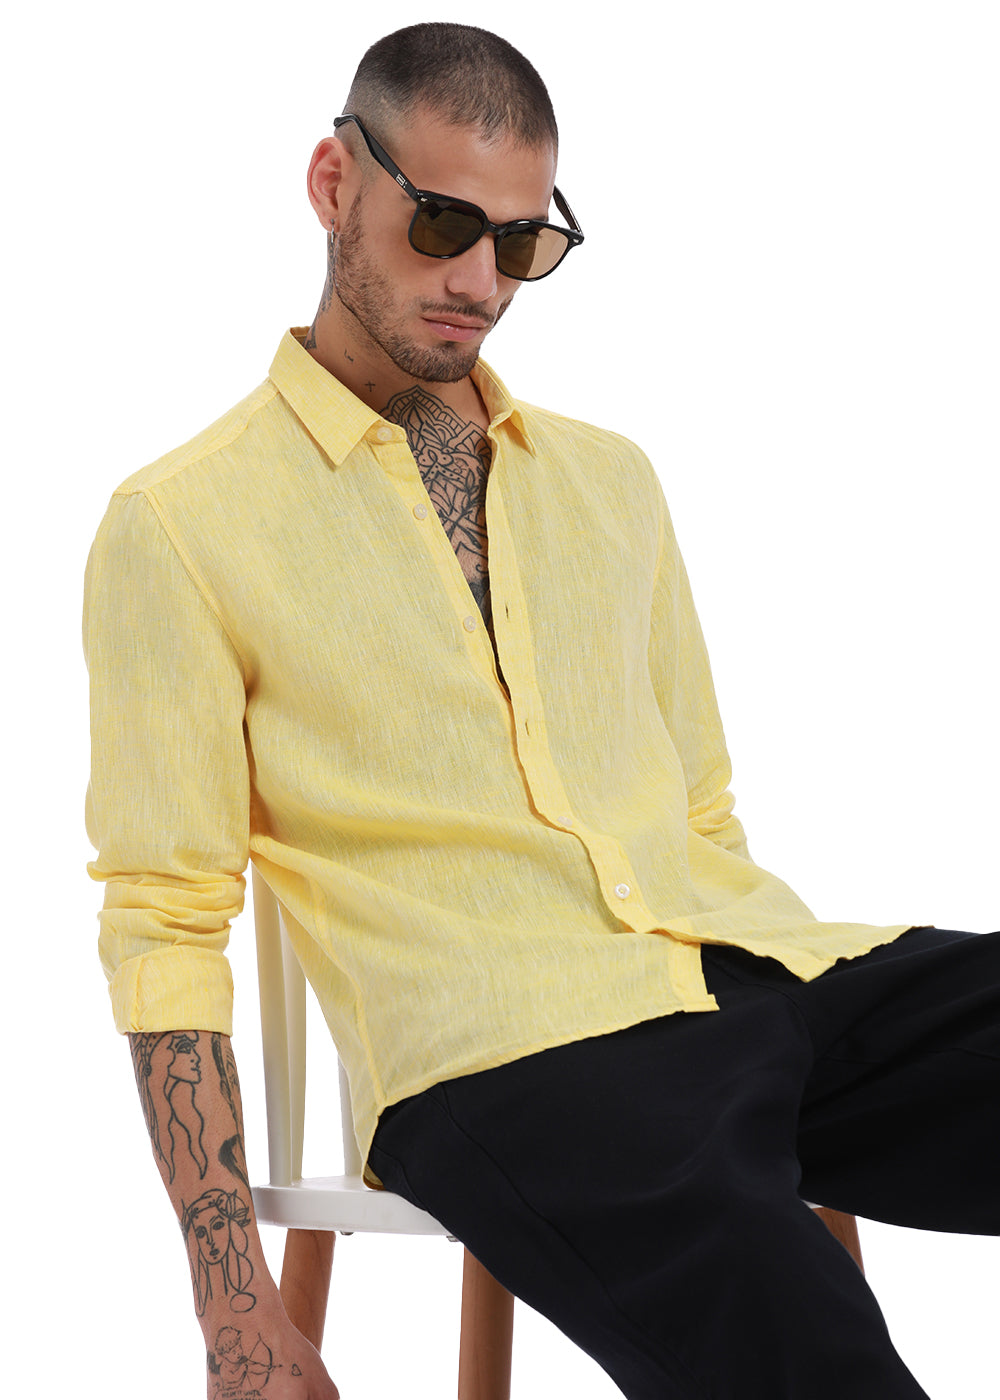 Get pastel yellow linen shirt